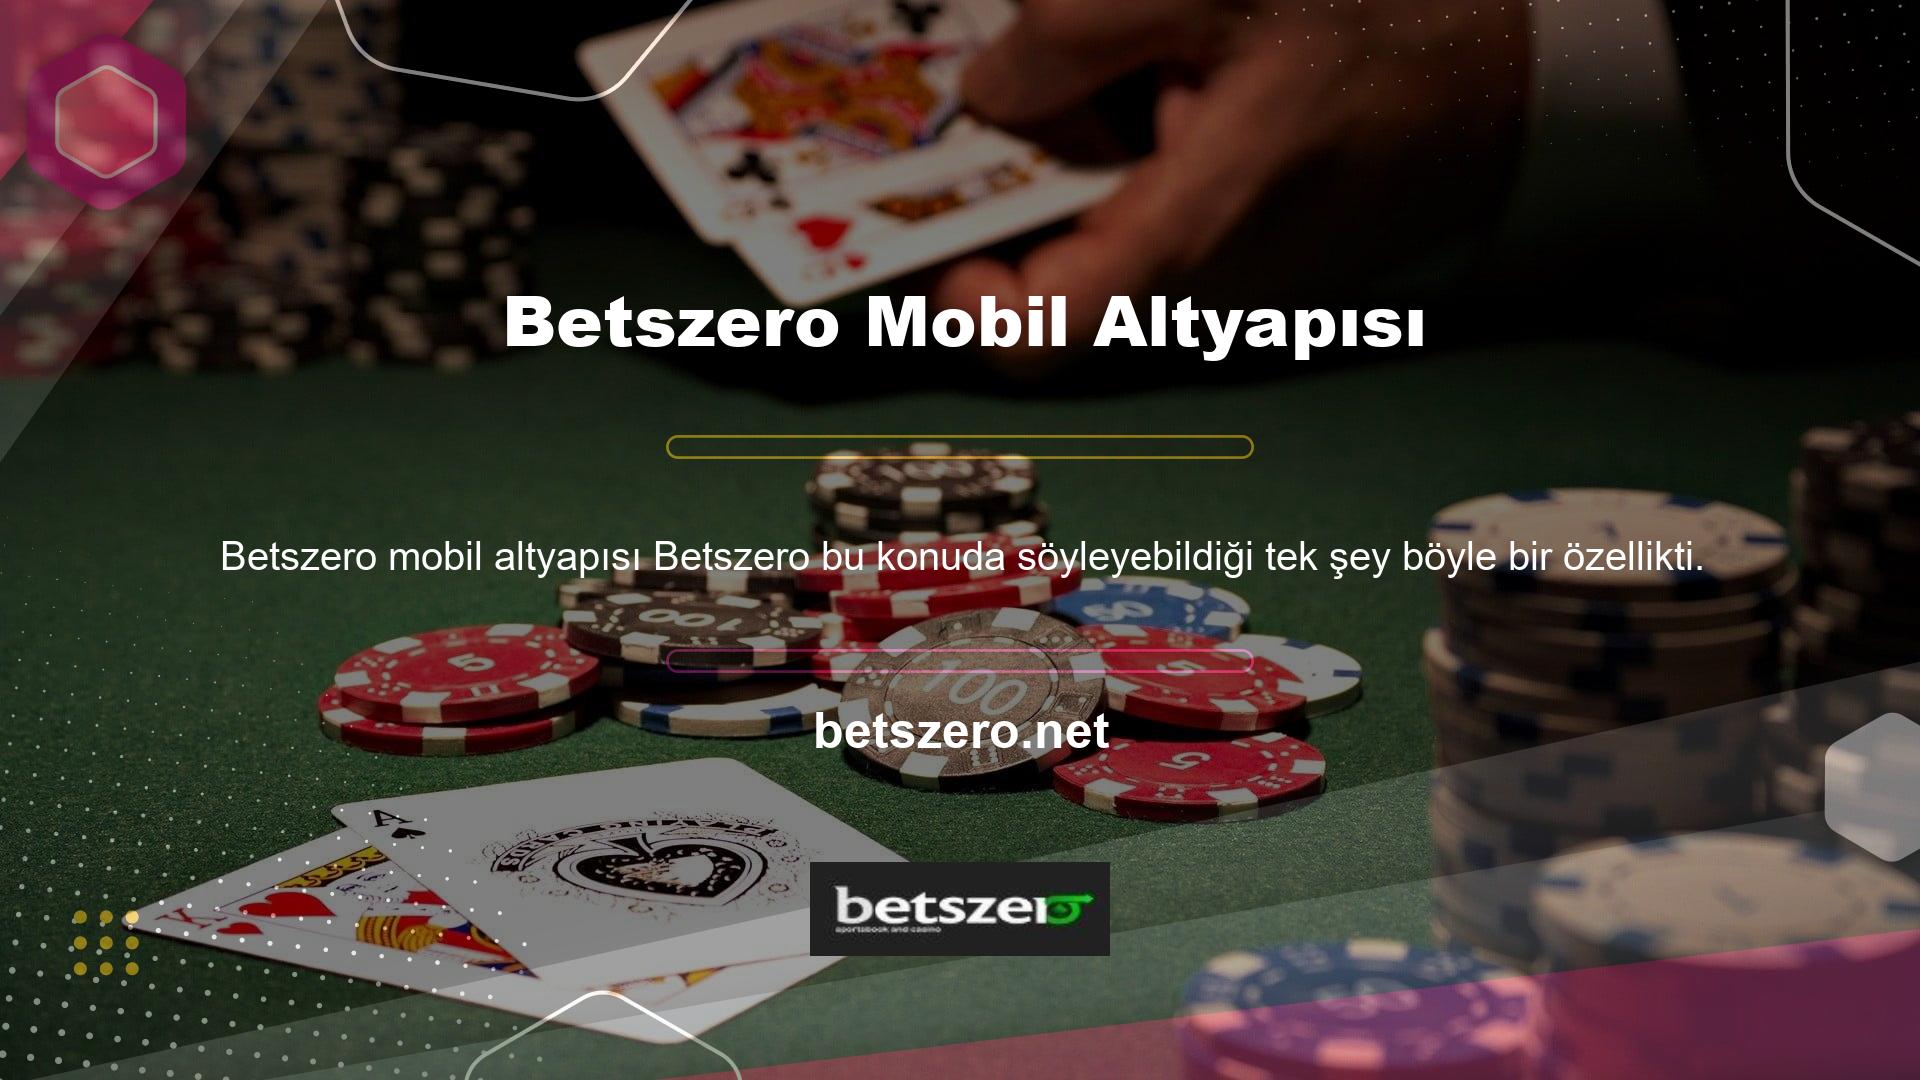 Betszero, üyelik ücretleri ve malzemeleri sağladığı için blackjack 21 ve diğer bahis faaliyetleri için en güvenilir platformdur